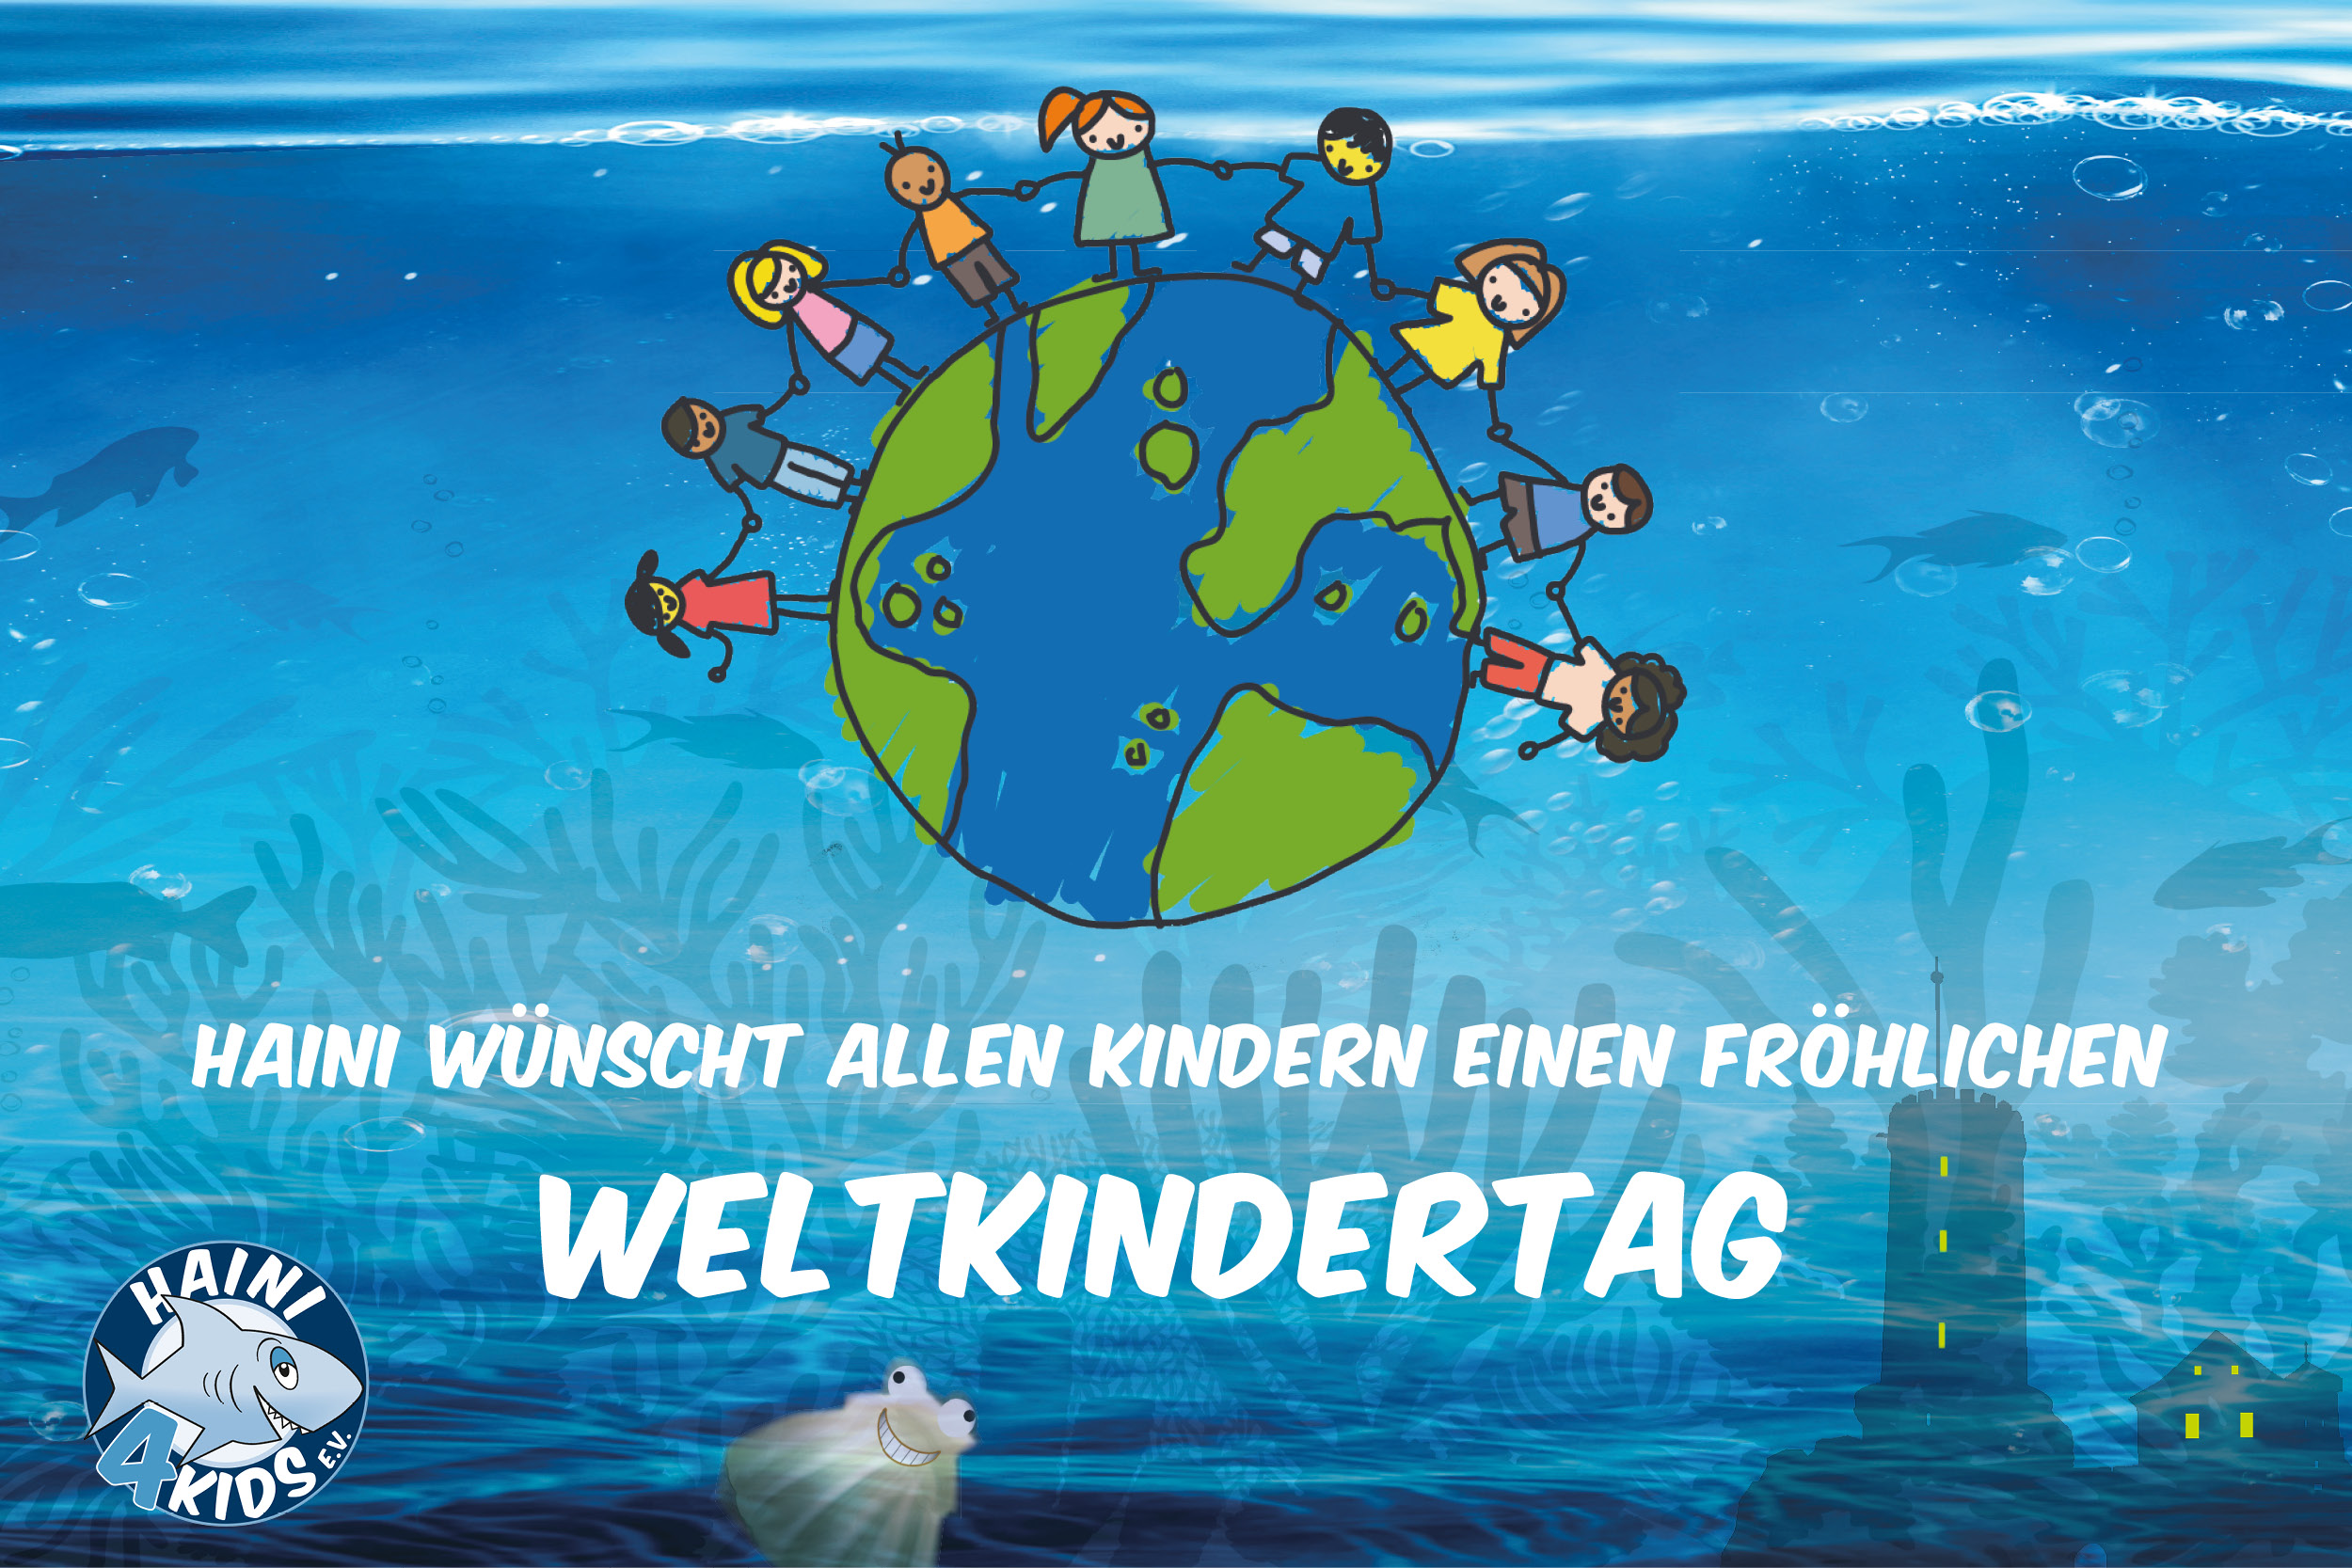 Haini4Kids Weltkindertag HAINI4KIDS Verein Bielefeld Kinder Wunsch Herzenswunsch Spende Jorewitz Immobilien